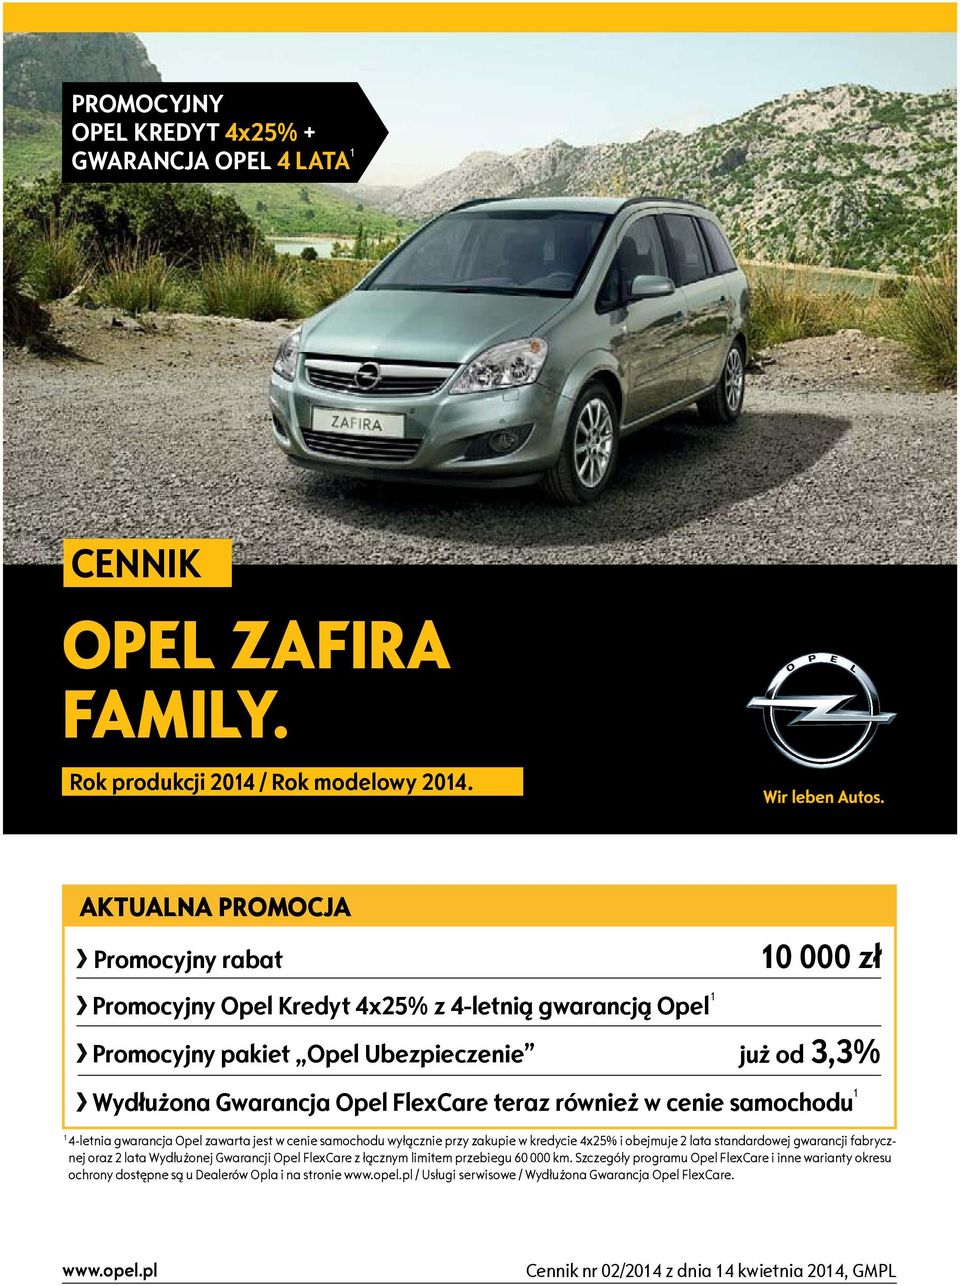 w cenie samochodu 1 1 4-letnia gwarancja Opel zawarta jest w cenie samochodu wyłącznie przy zakupie w kredycie 4x25% i obejmuje 2 lata standardowej gwarancji fabrycznej oraz 2 lata Wydłużonej